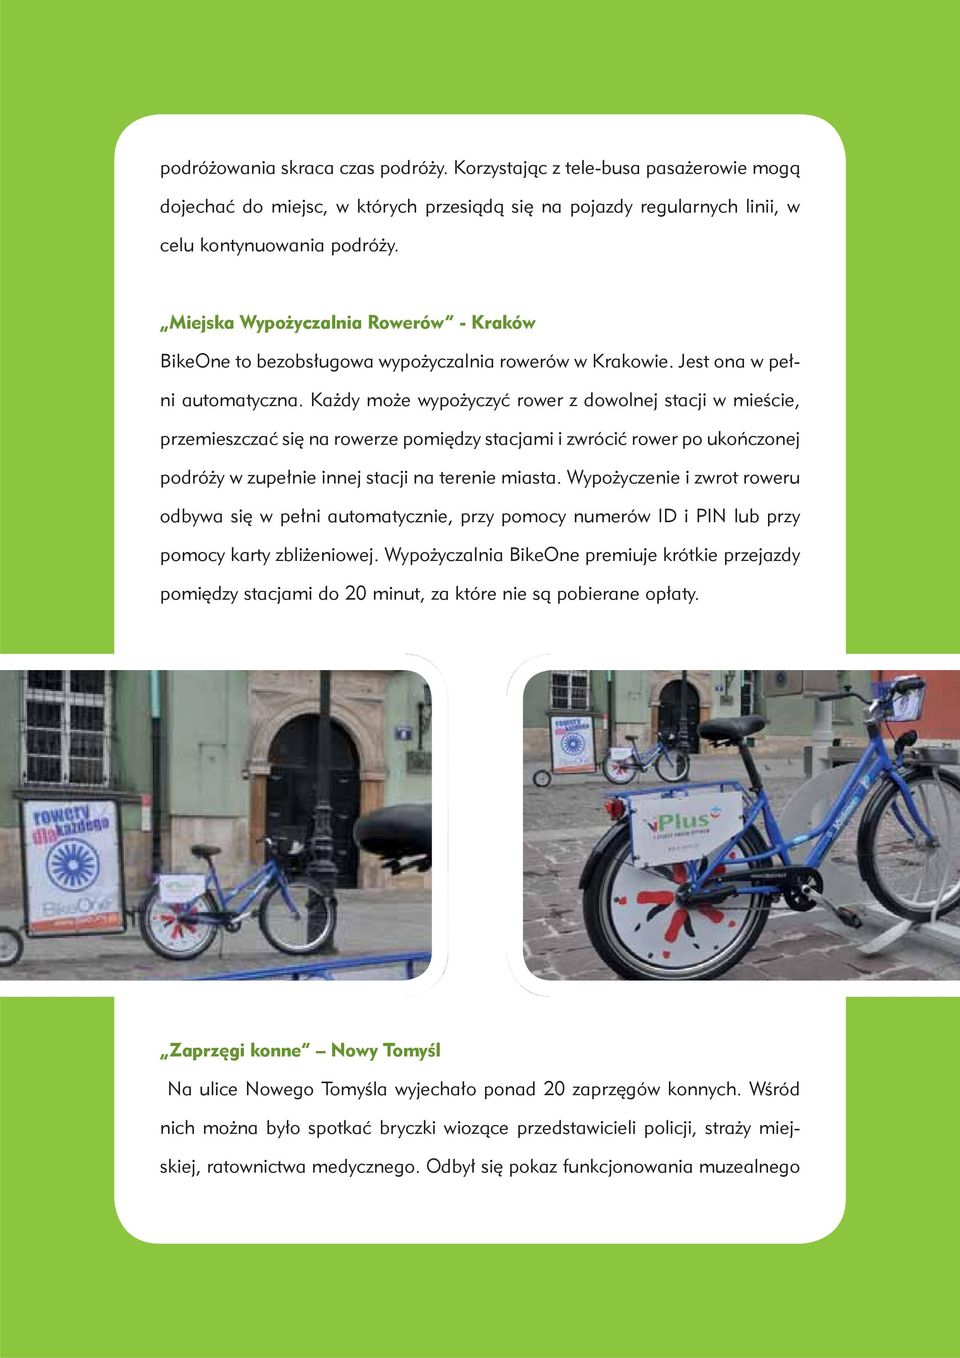 Każdy może wypożyczyć rower z dowolnej stacji w mieście, przemieszczać się na rowerze pomiędzy stacjami i zwrócić rower po ukończonej podróży w zupełnie innej stacji na terenie miasta.